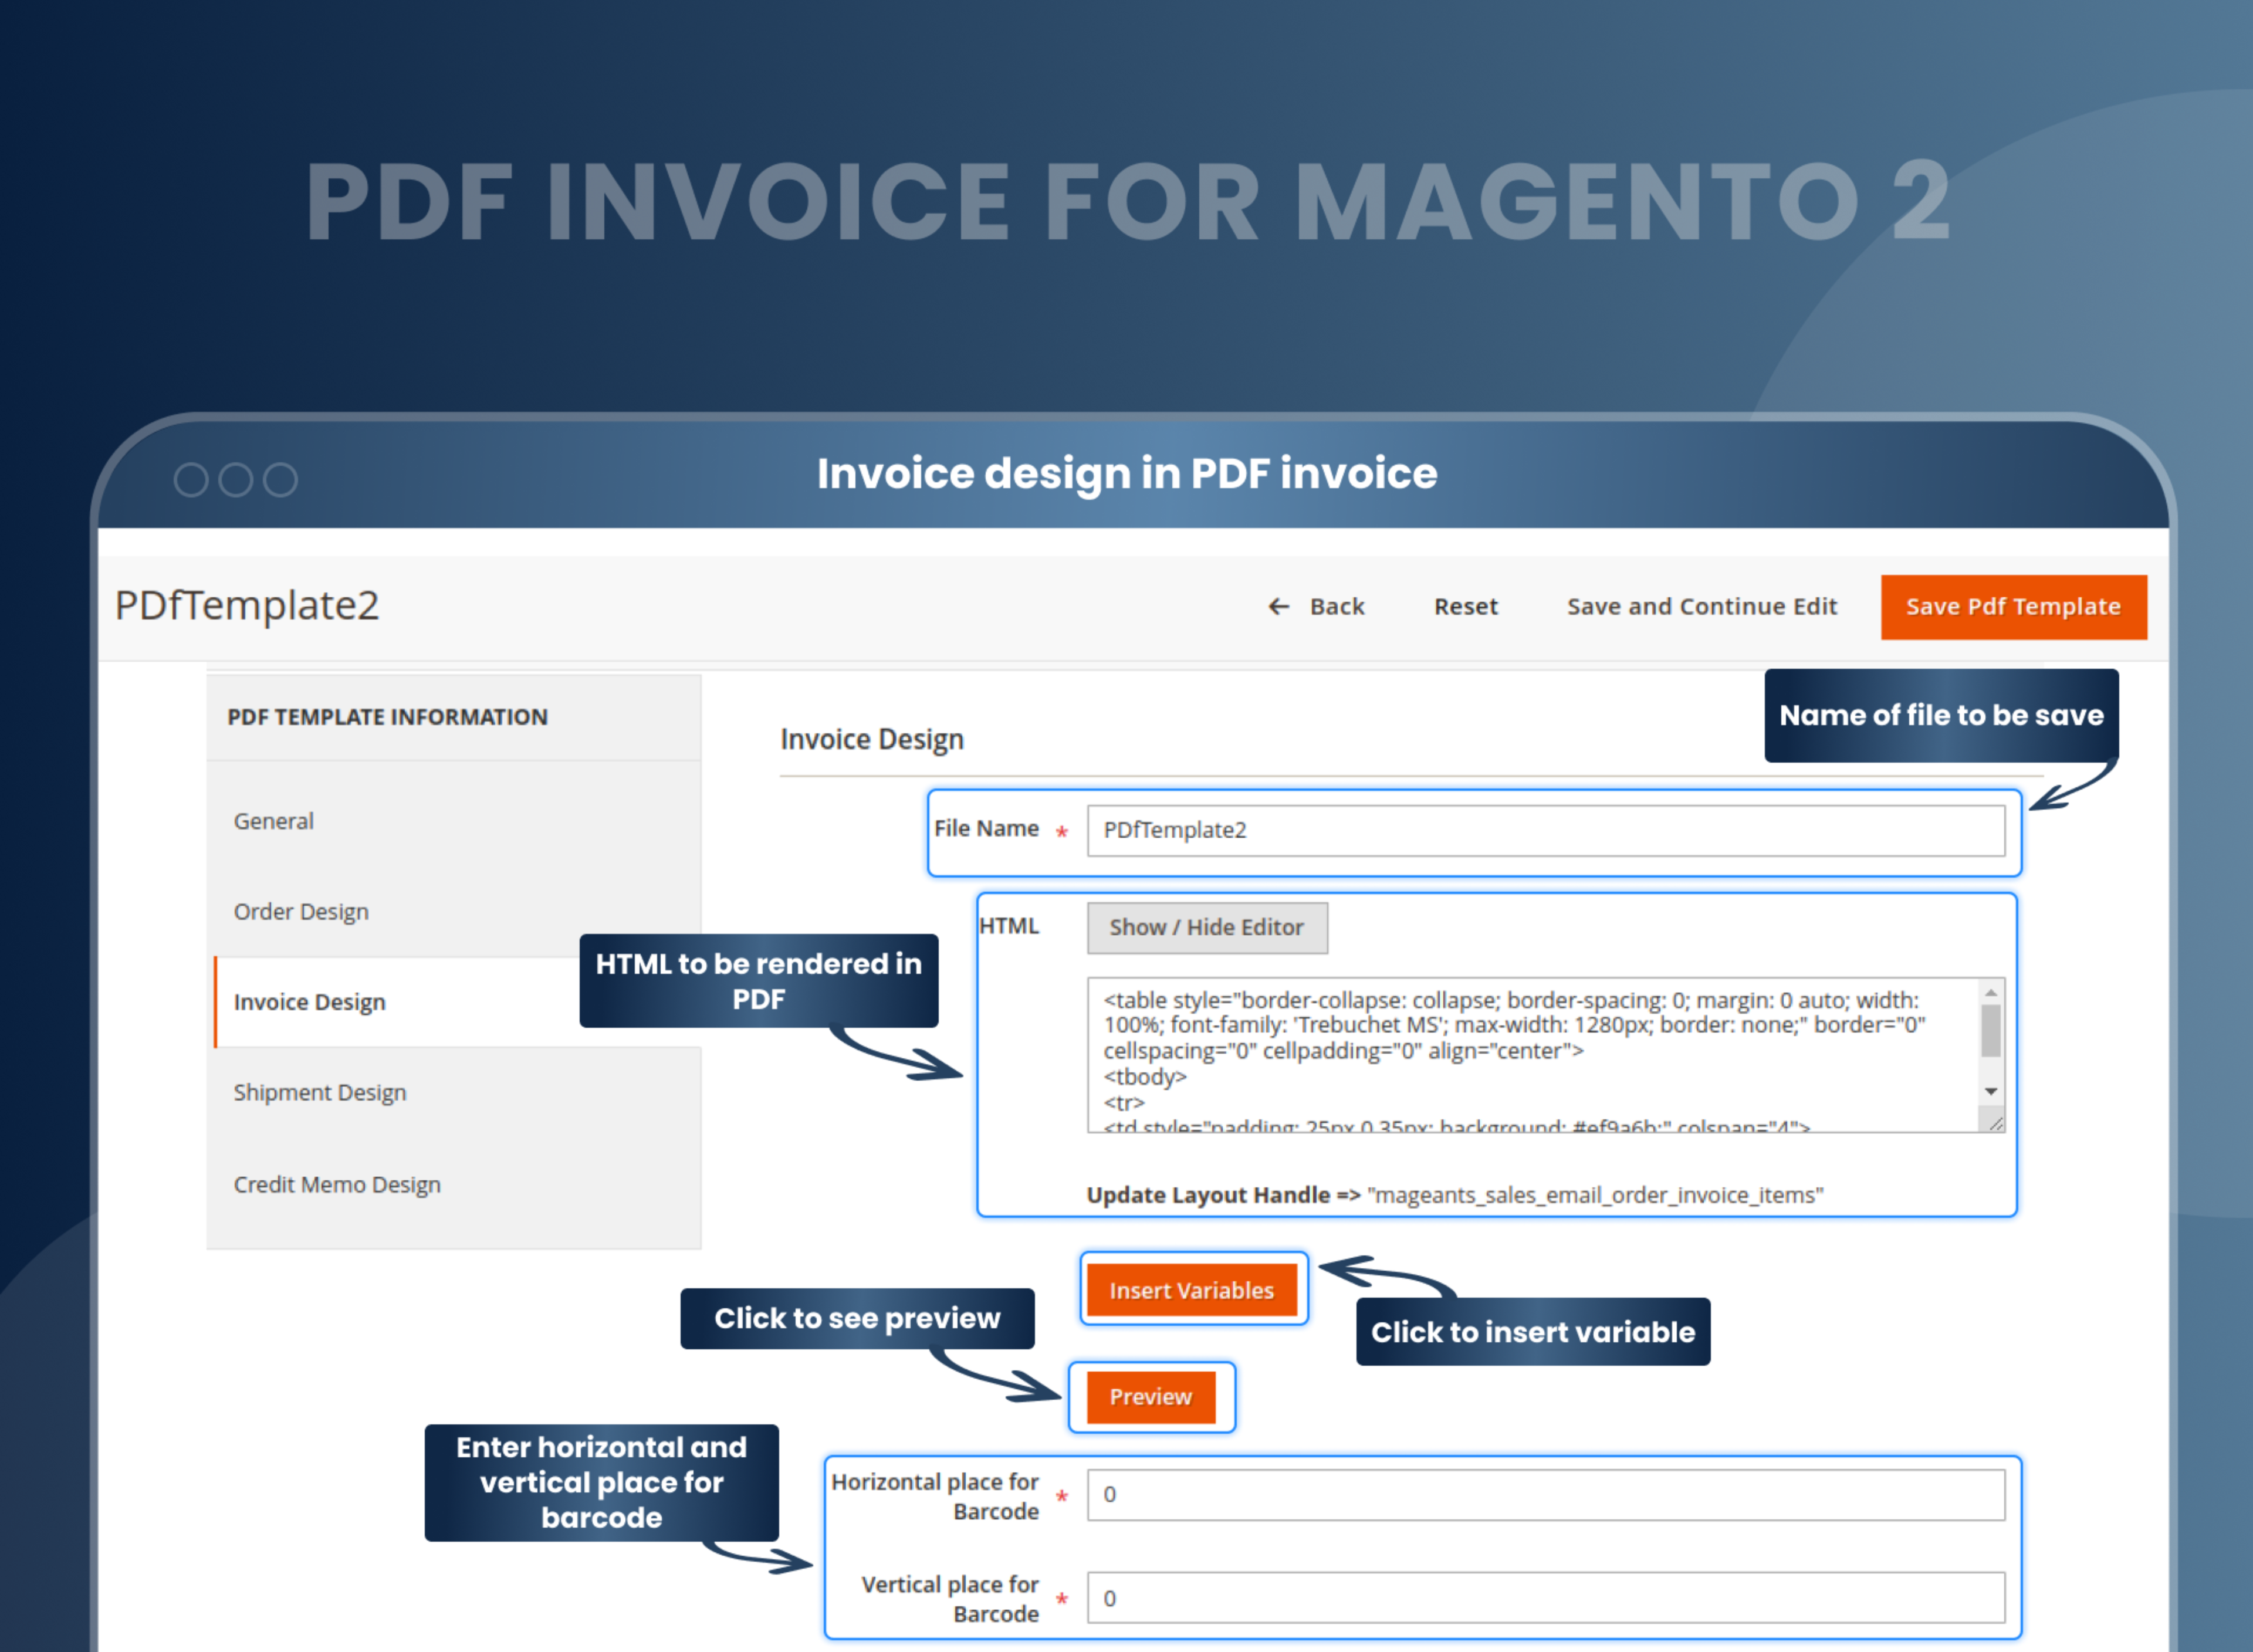 Invoice design in PDF invoice